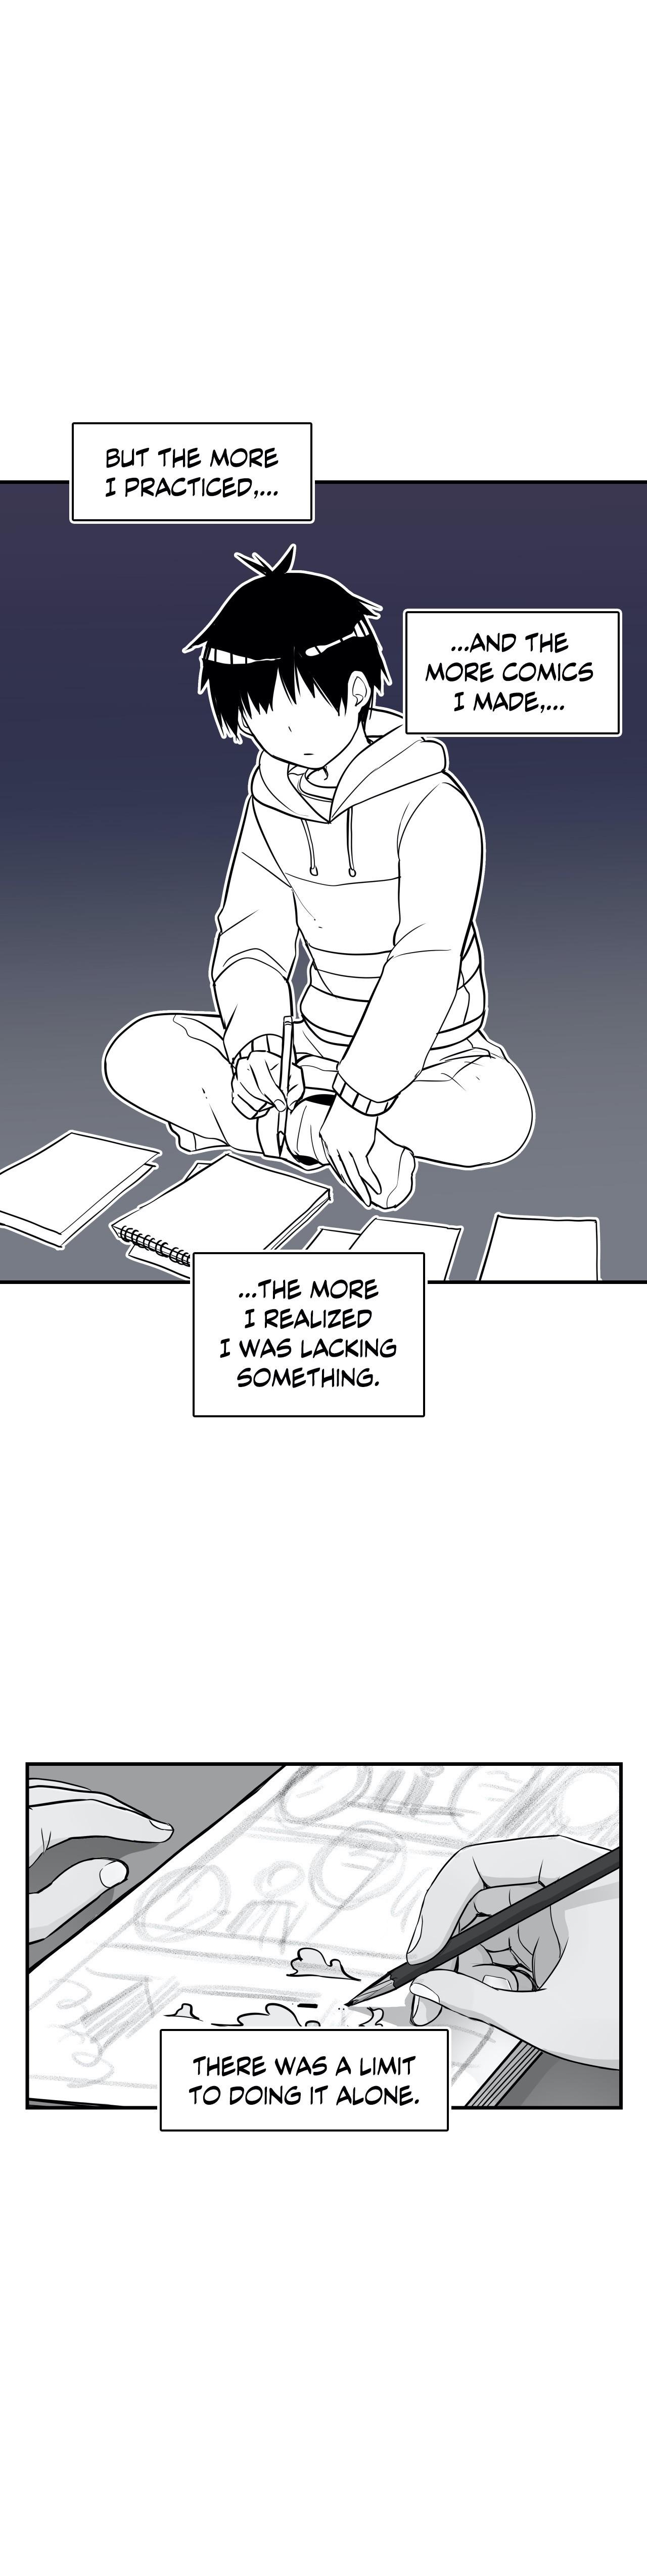 Erotic Manga Department! - Page 3